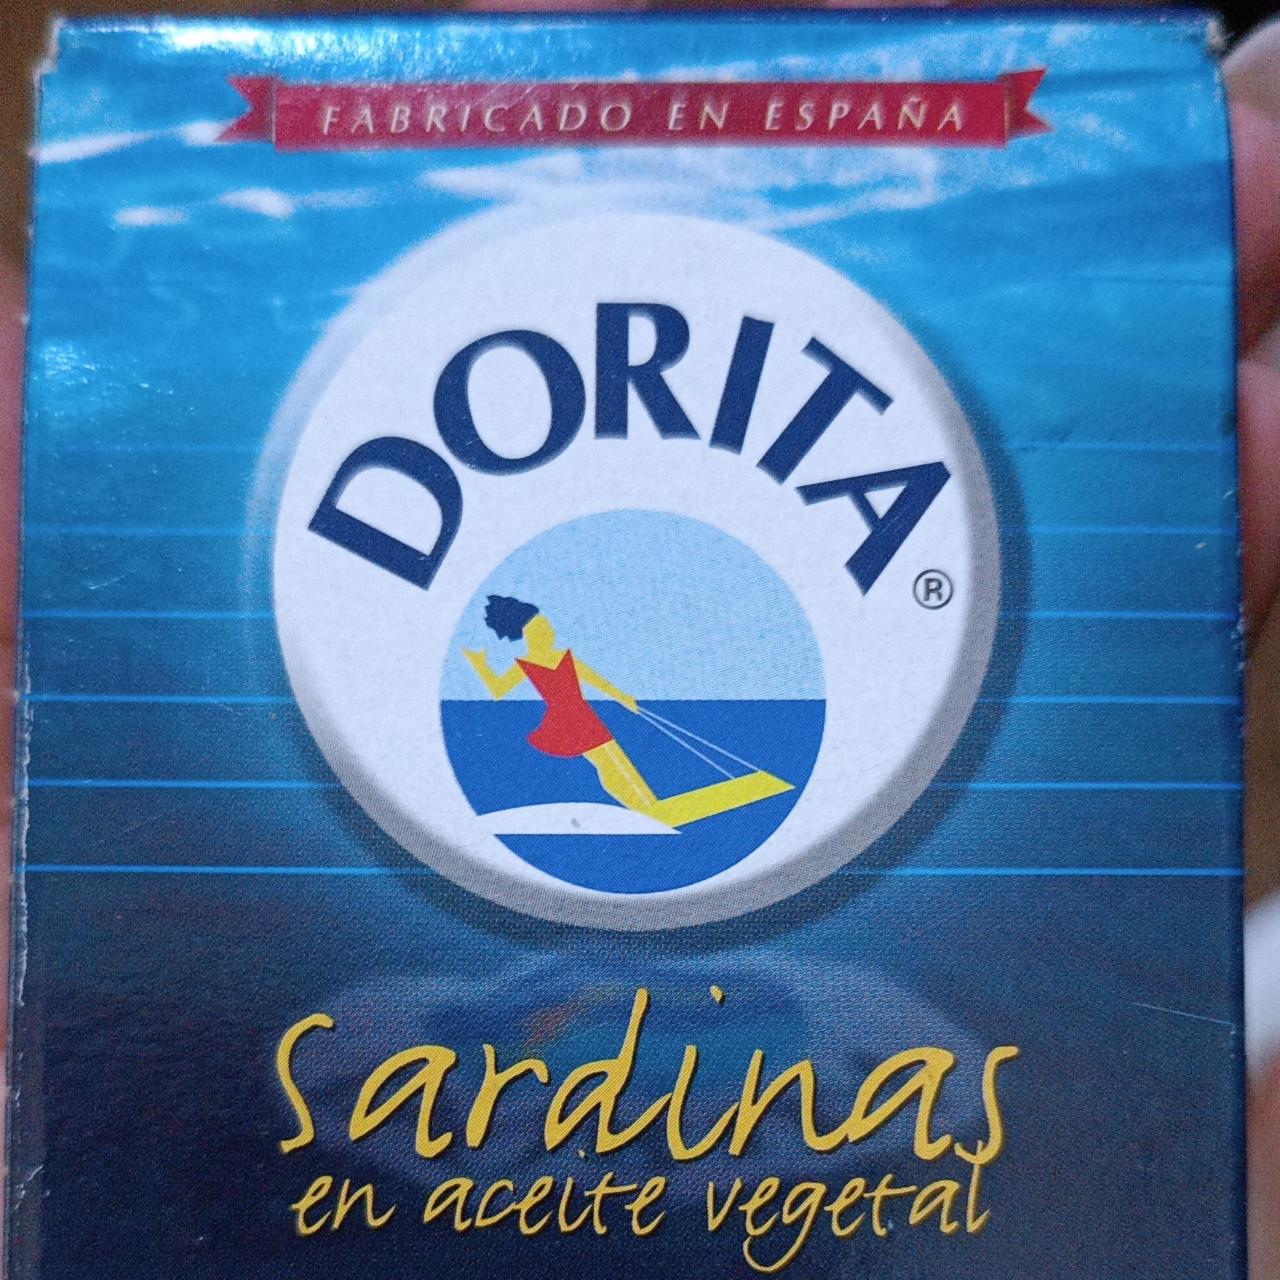 Фото - Сардины в масле Sardinas Dorita